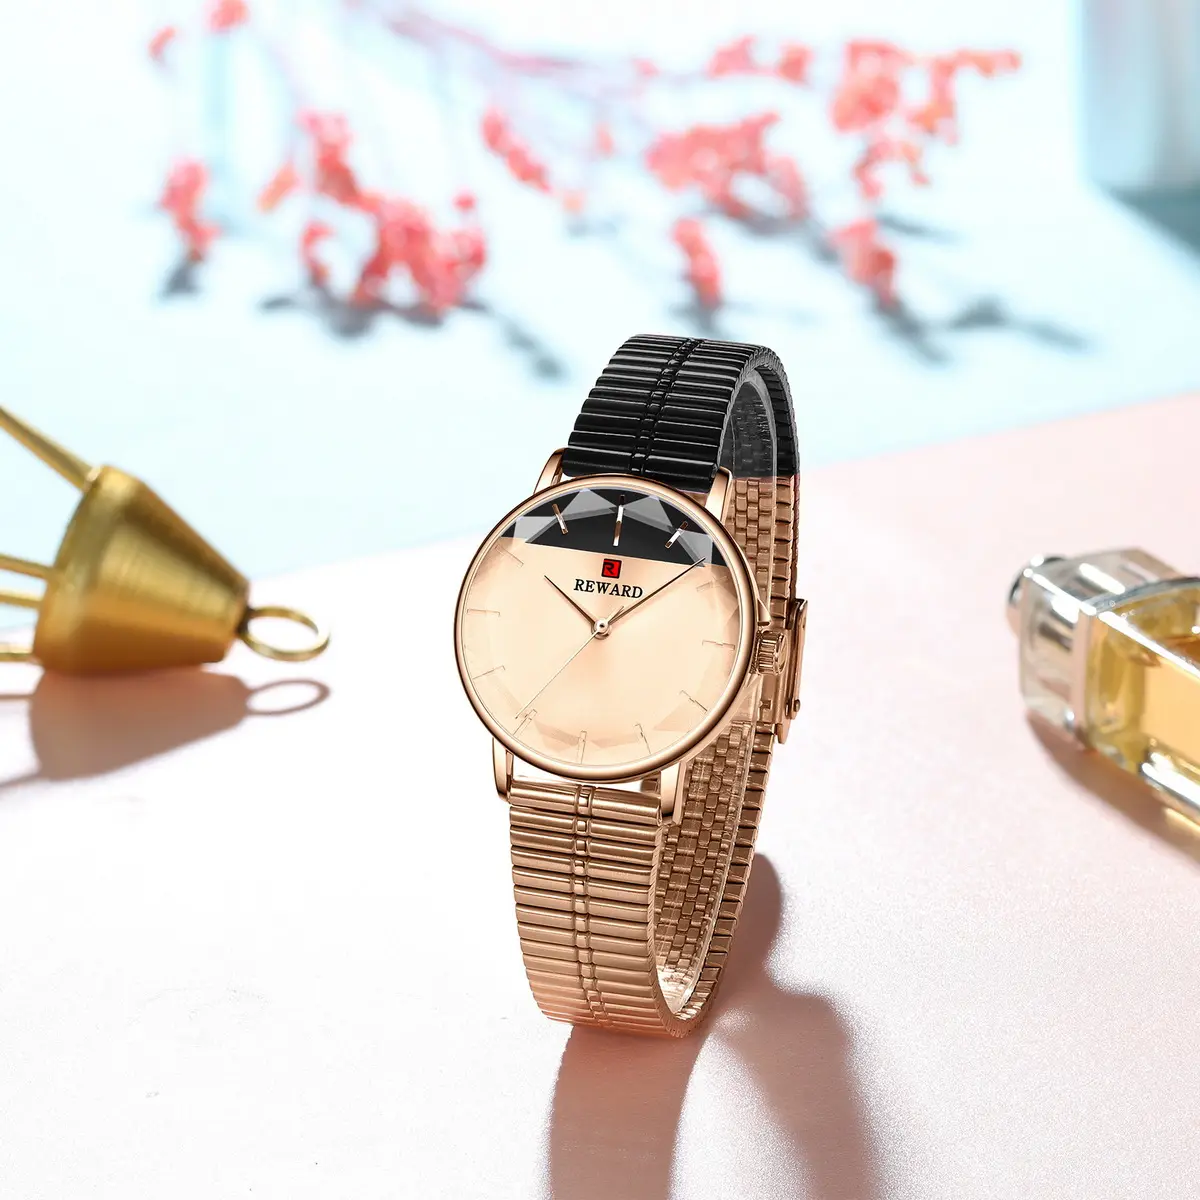 Reward Beautiful Women in Wristwatches Ladies Fashion Watches Women Luxury Watches 2021 Japan Movement Quartz Wristwatch